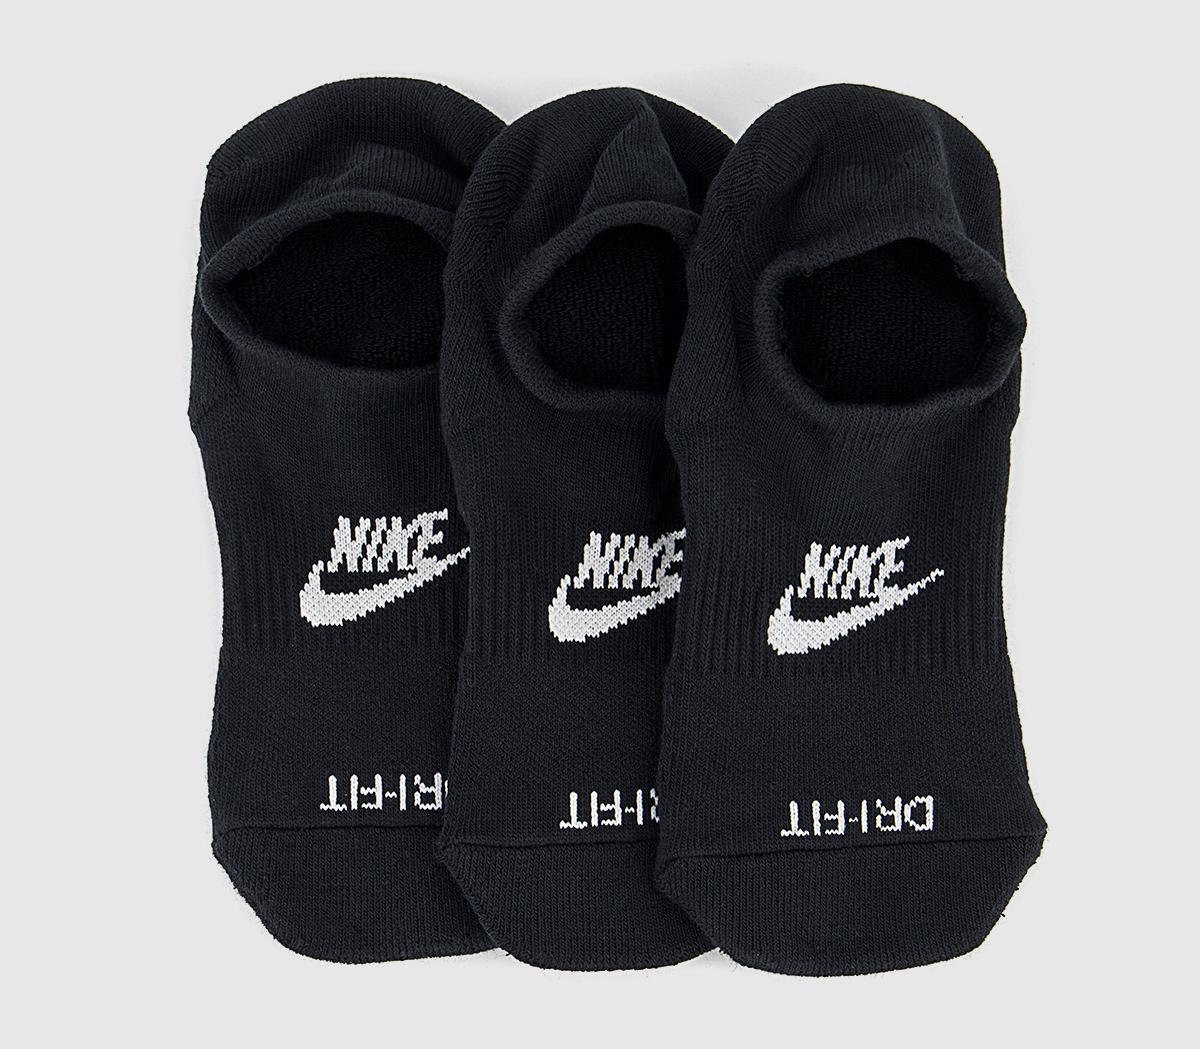 Nike Footie Socks Black White, M